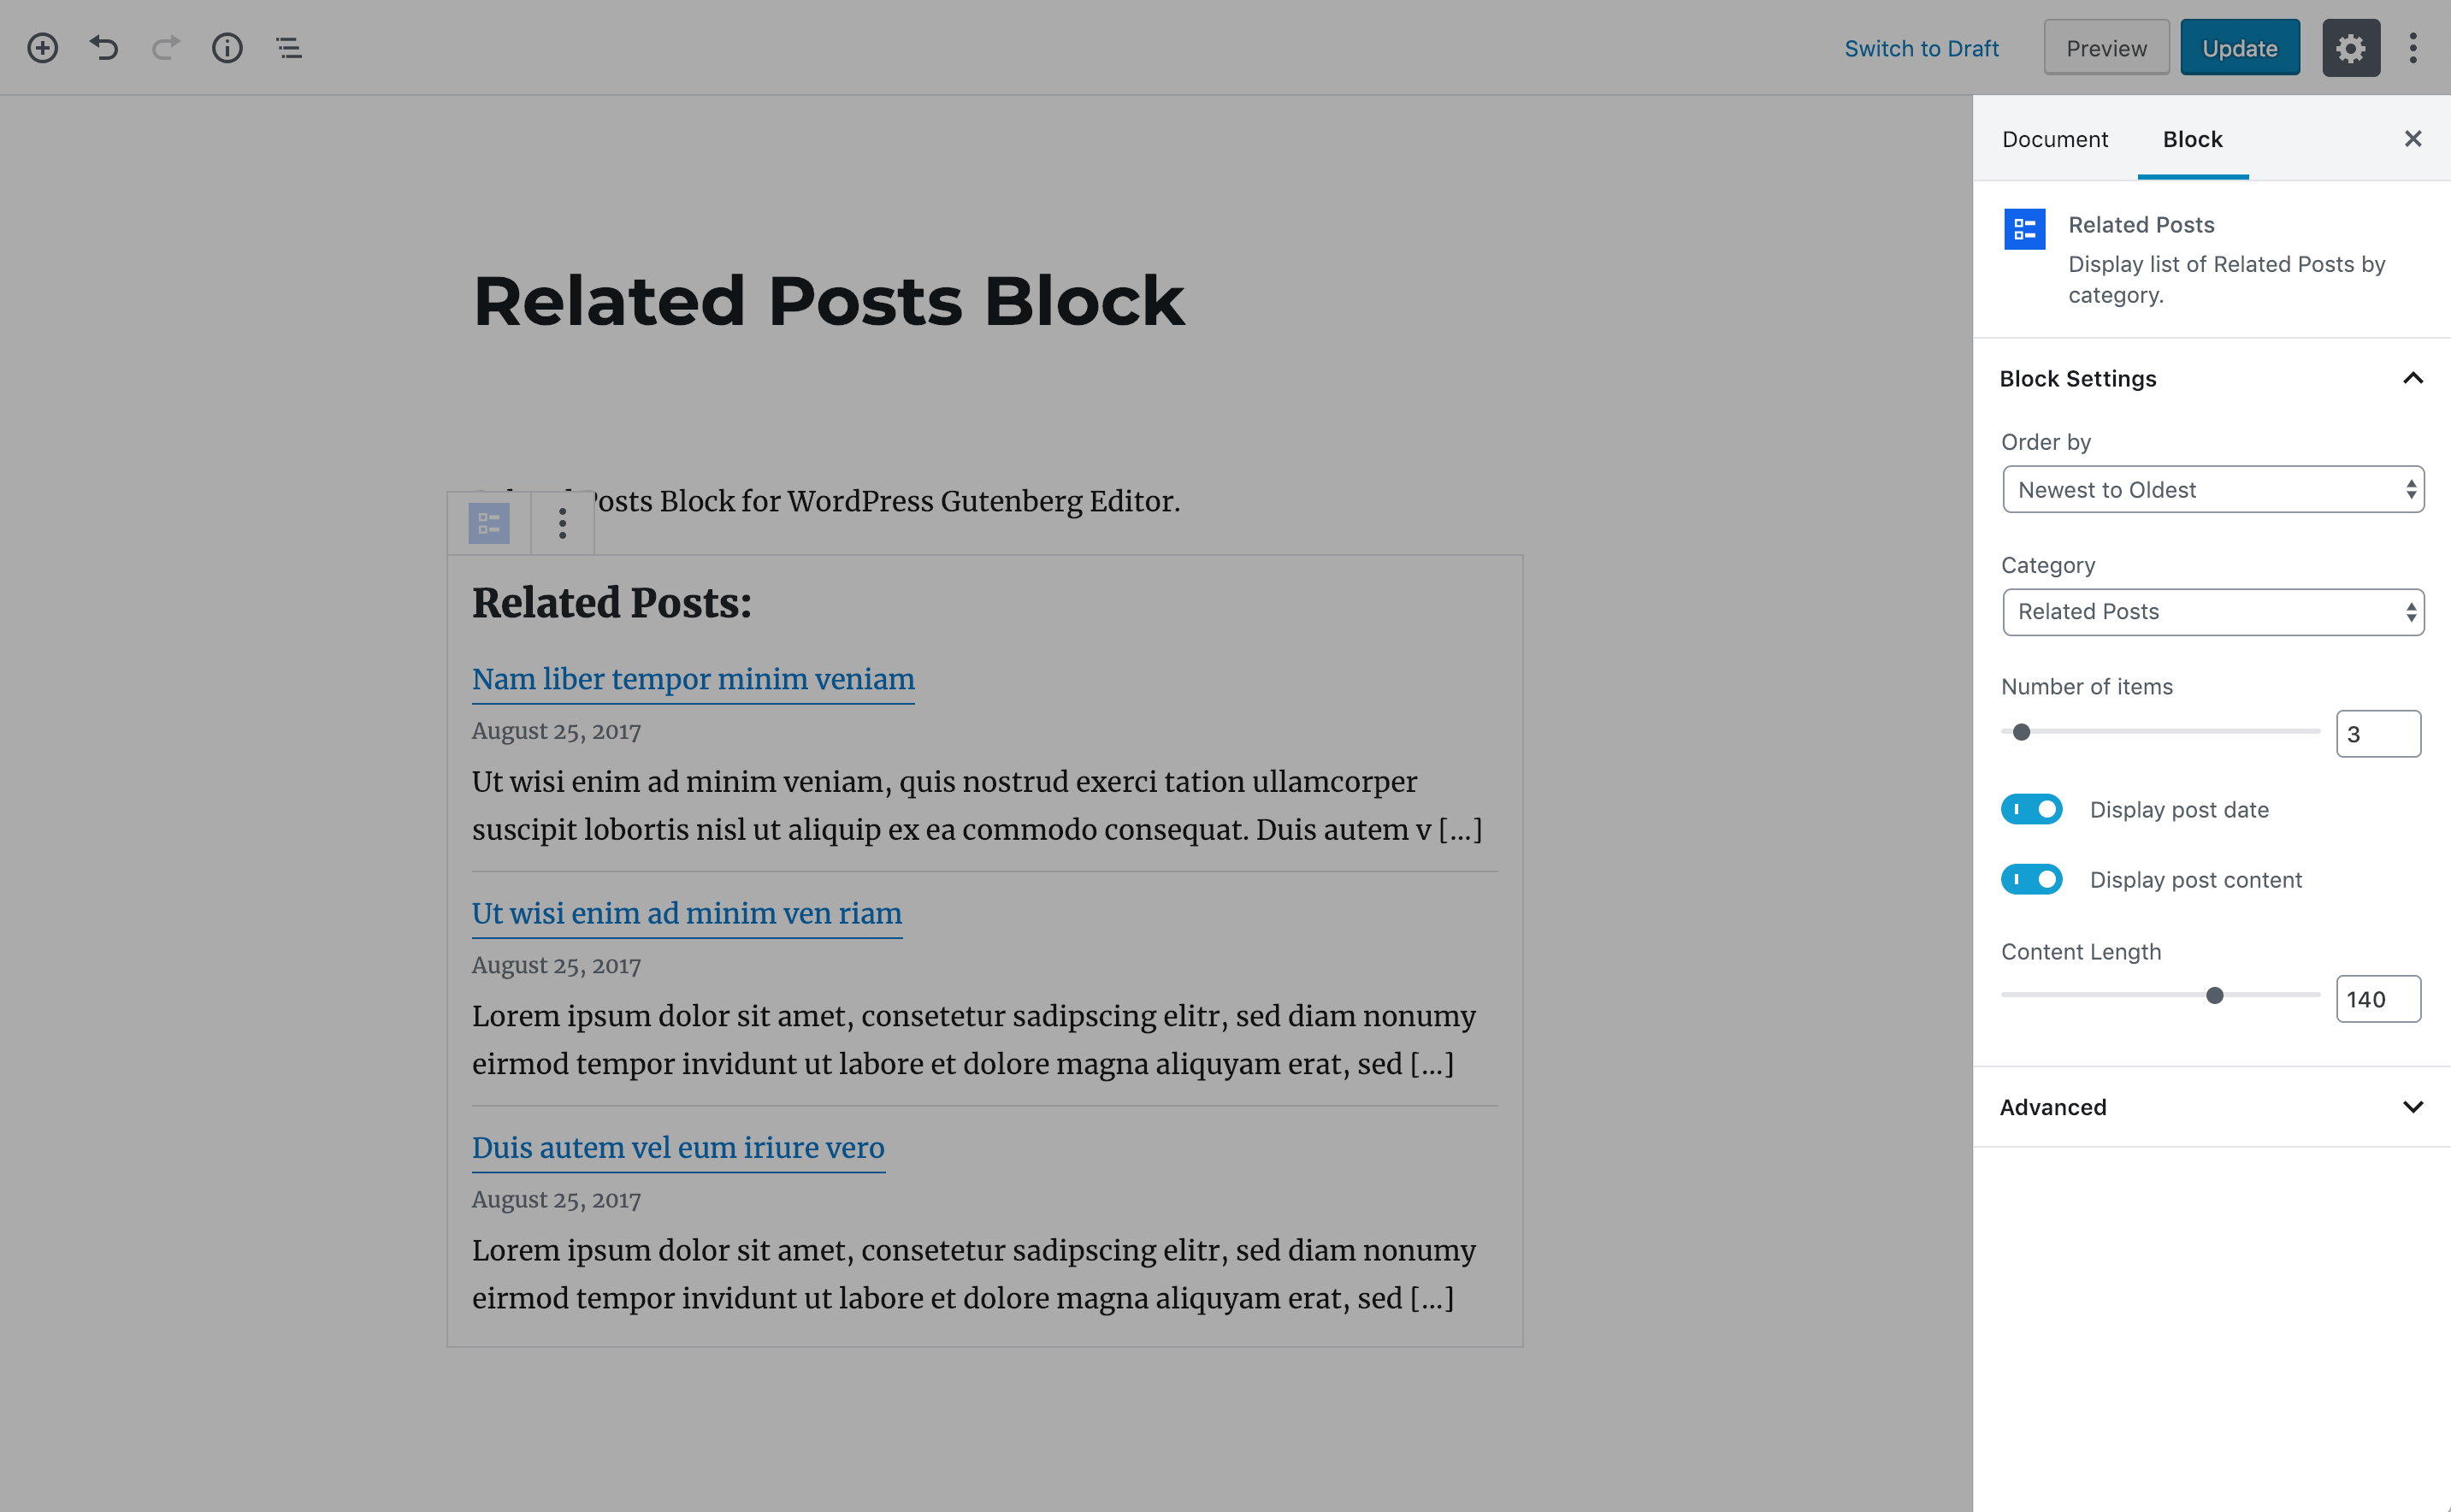 Block settings.